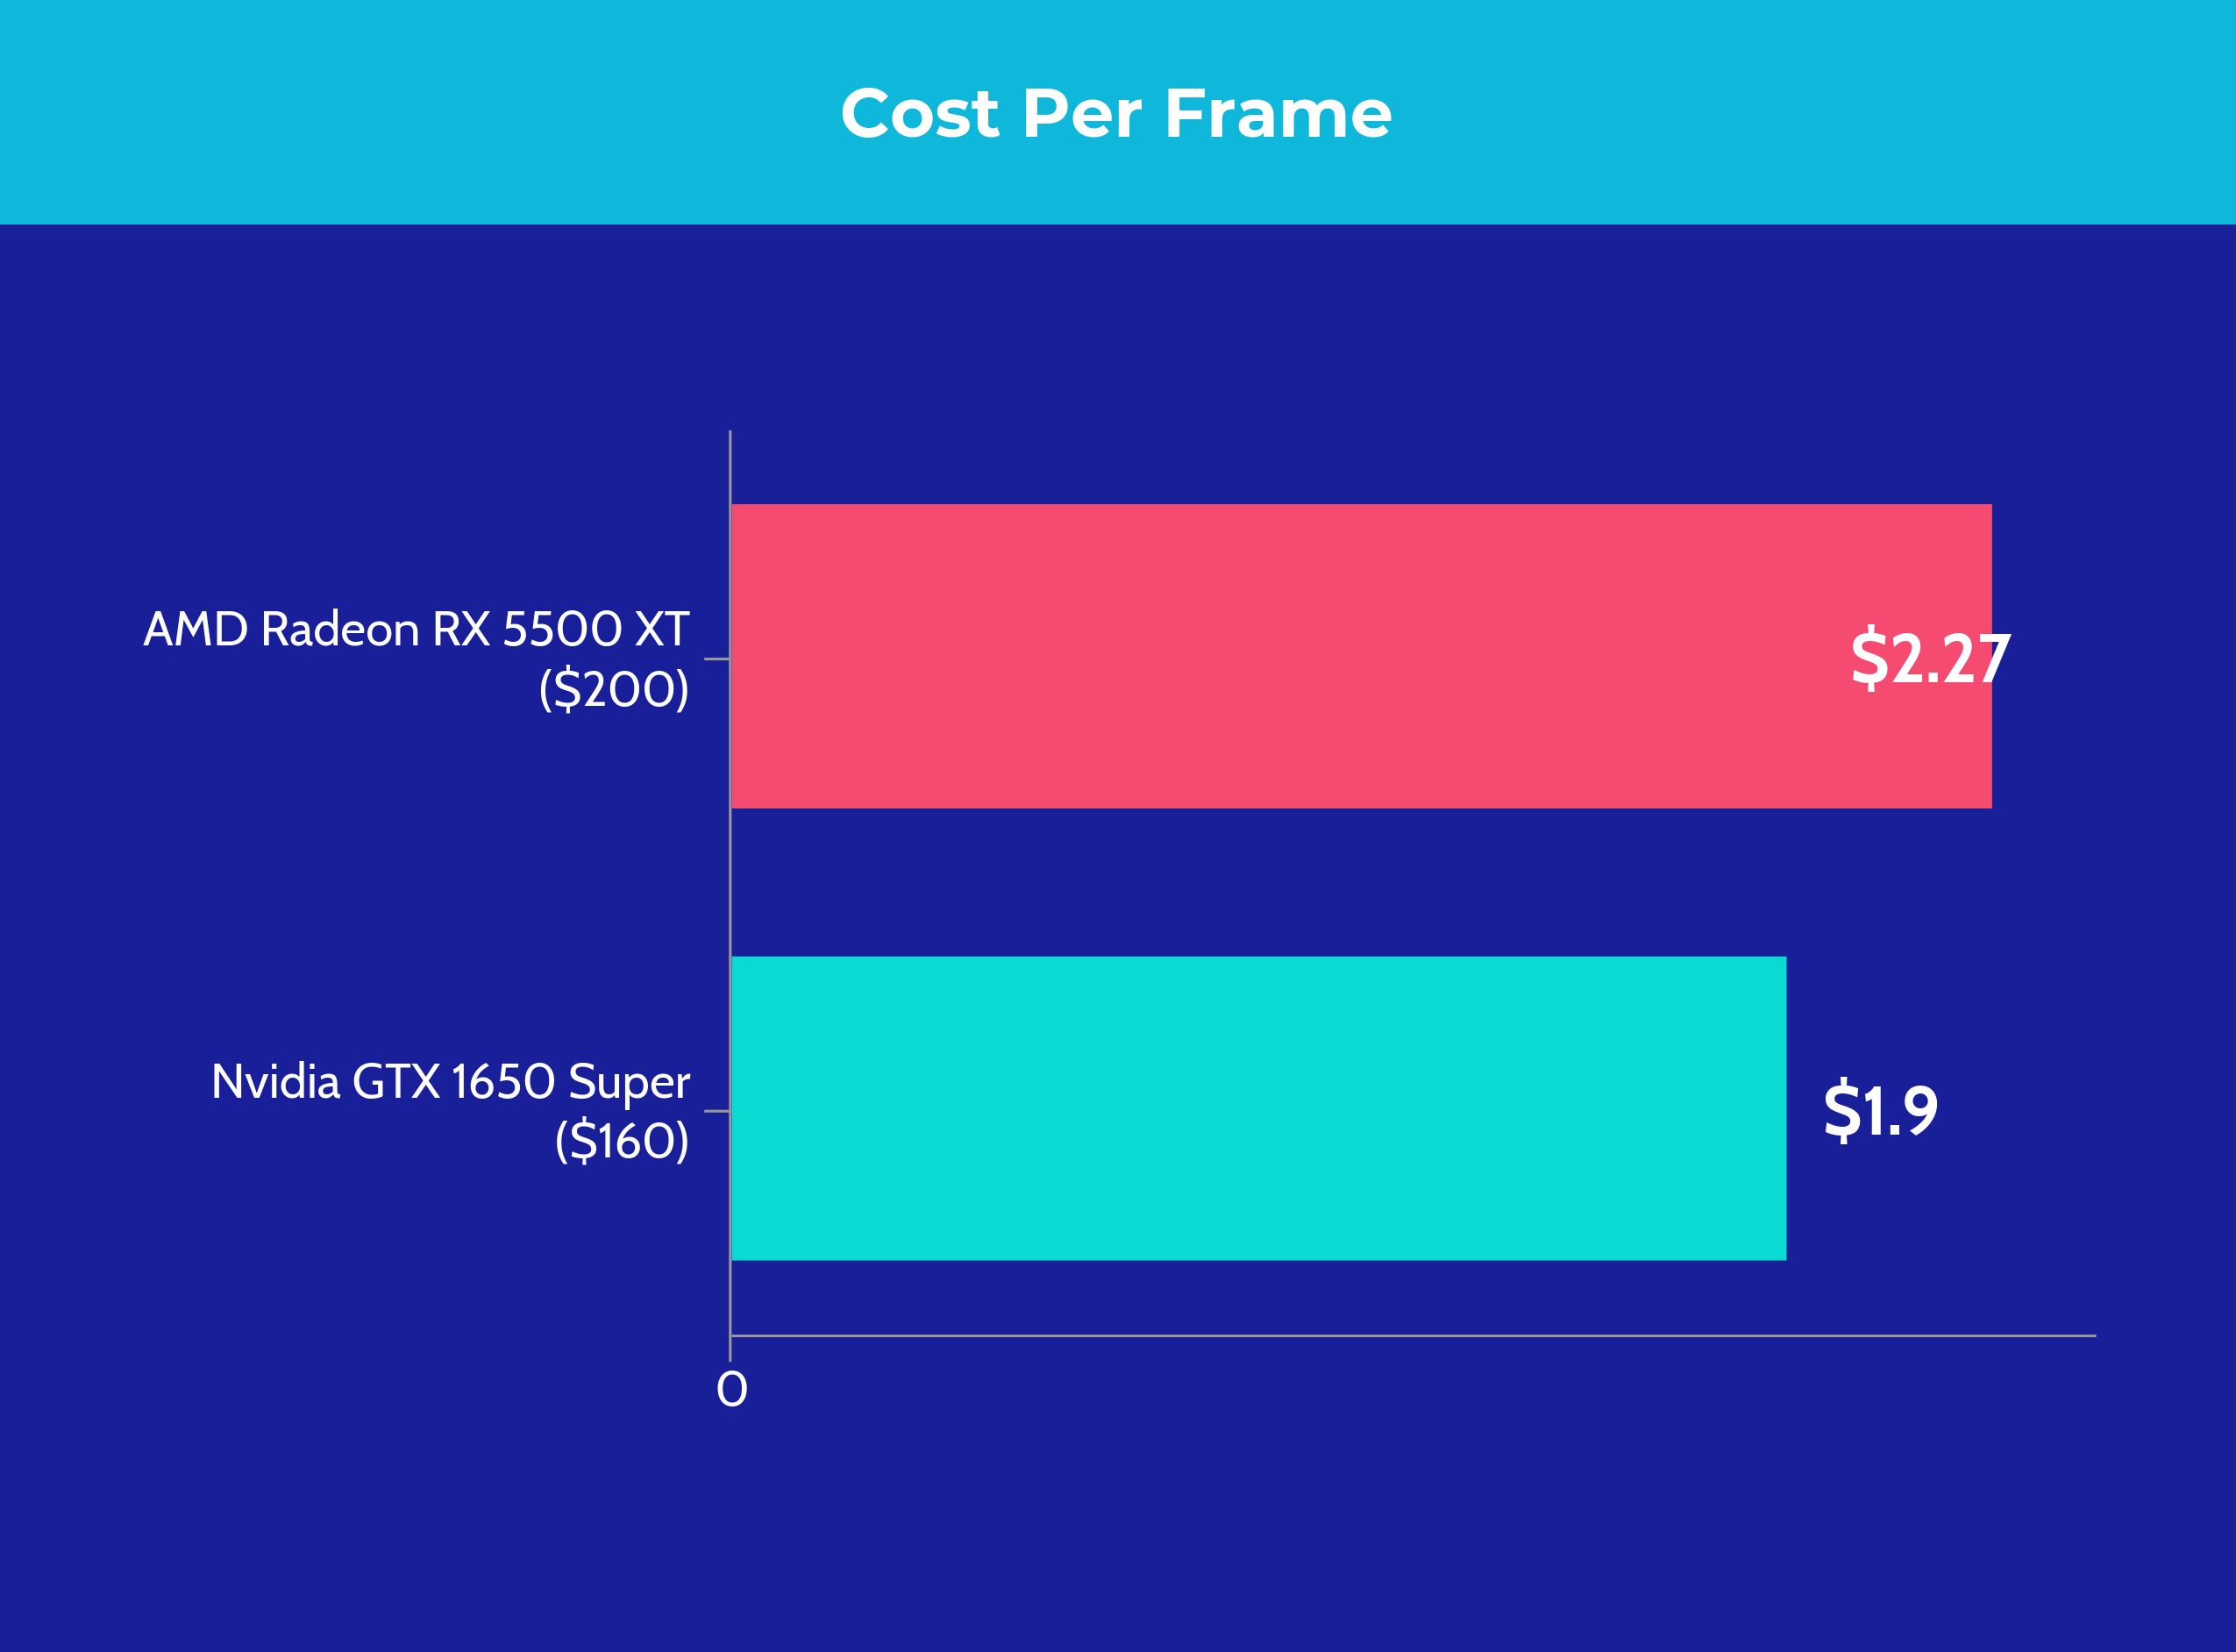 AMD Radeon RX 5500 XT vs Nvidia GTX 1650 Super - Cost per frame